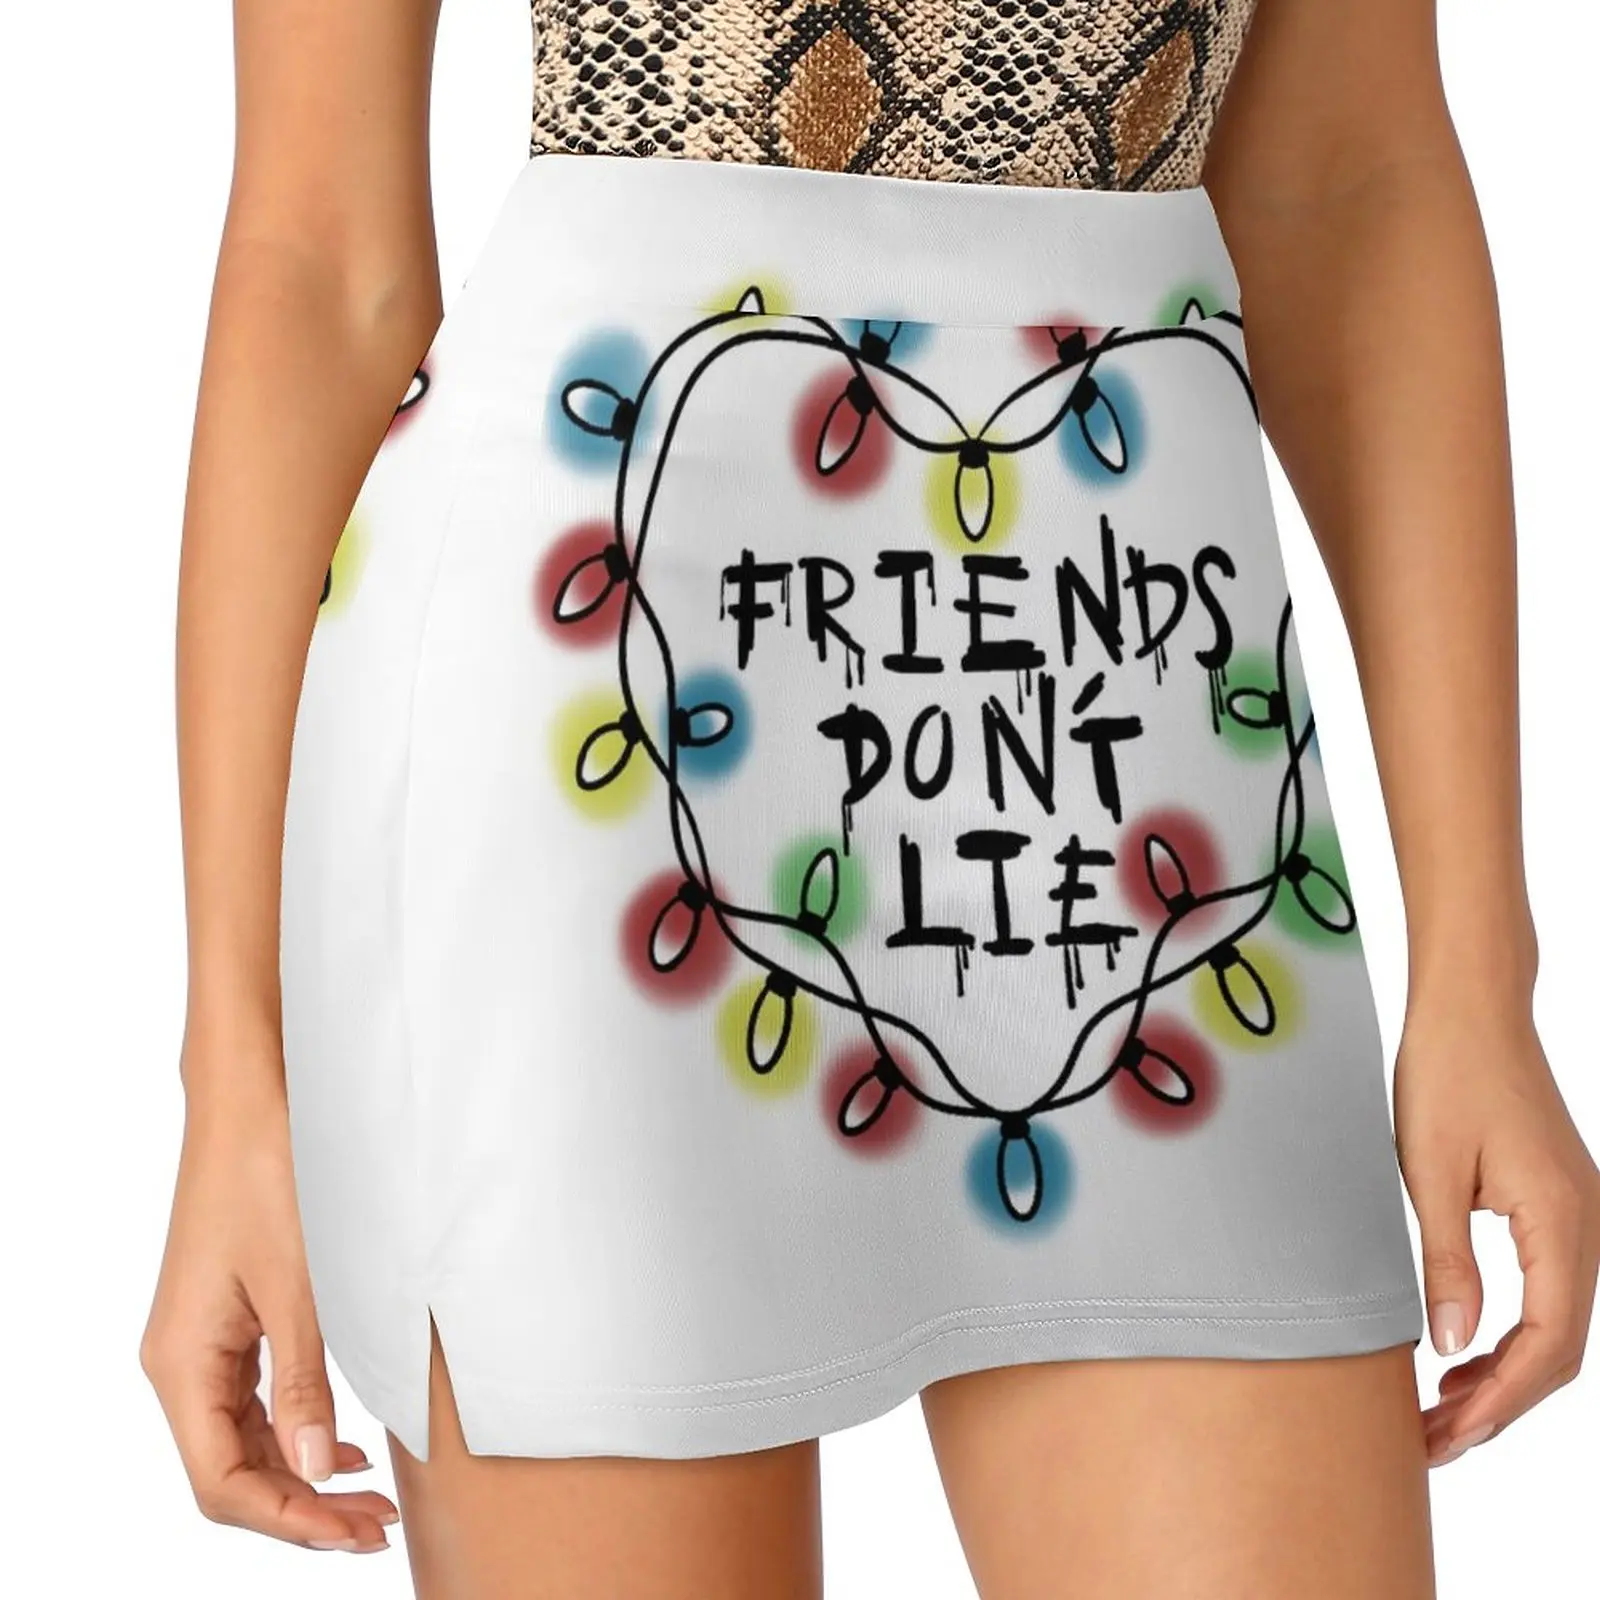 FRIENDS DON'T LIE Light proof trouser skirt Kawaii modest skirts for women конструктор lego friends международная школа хартлейк